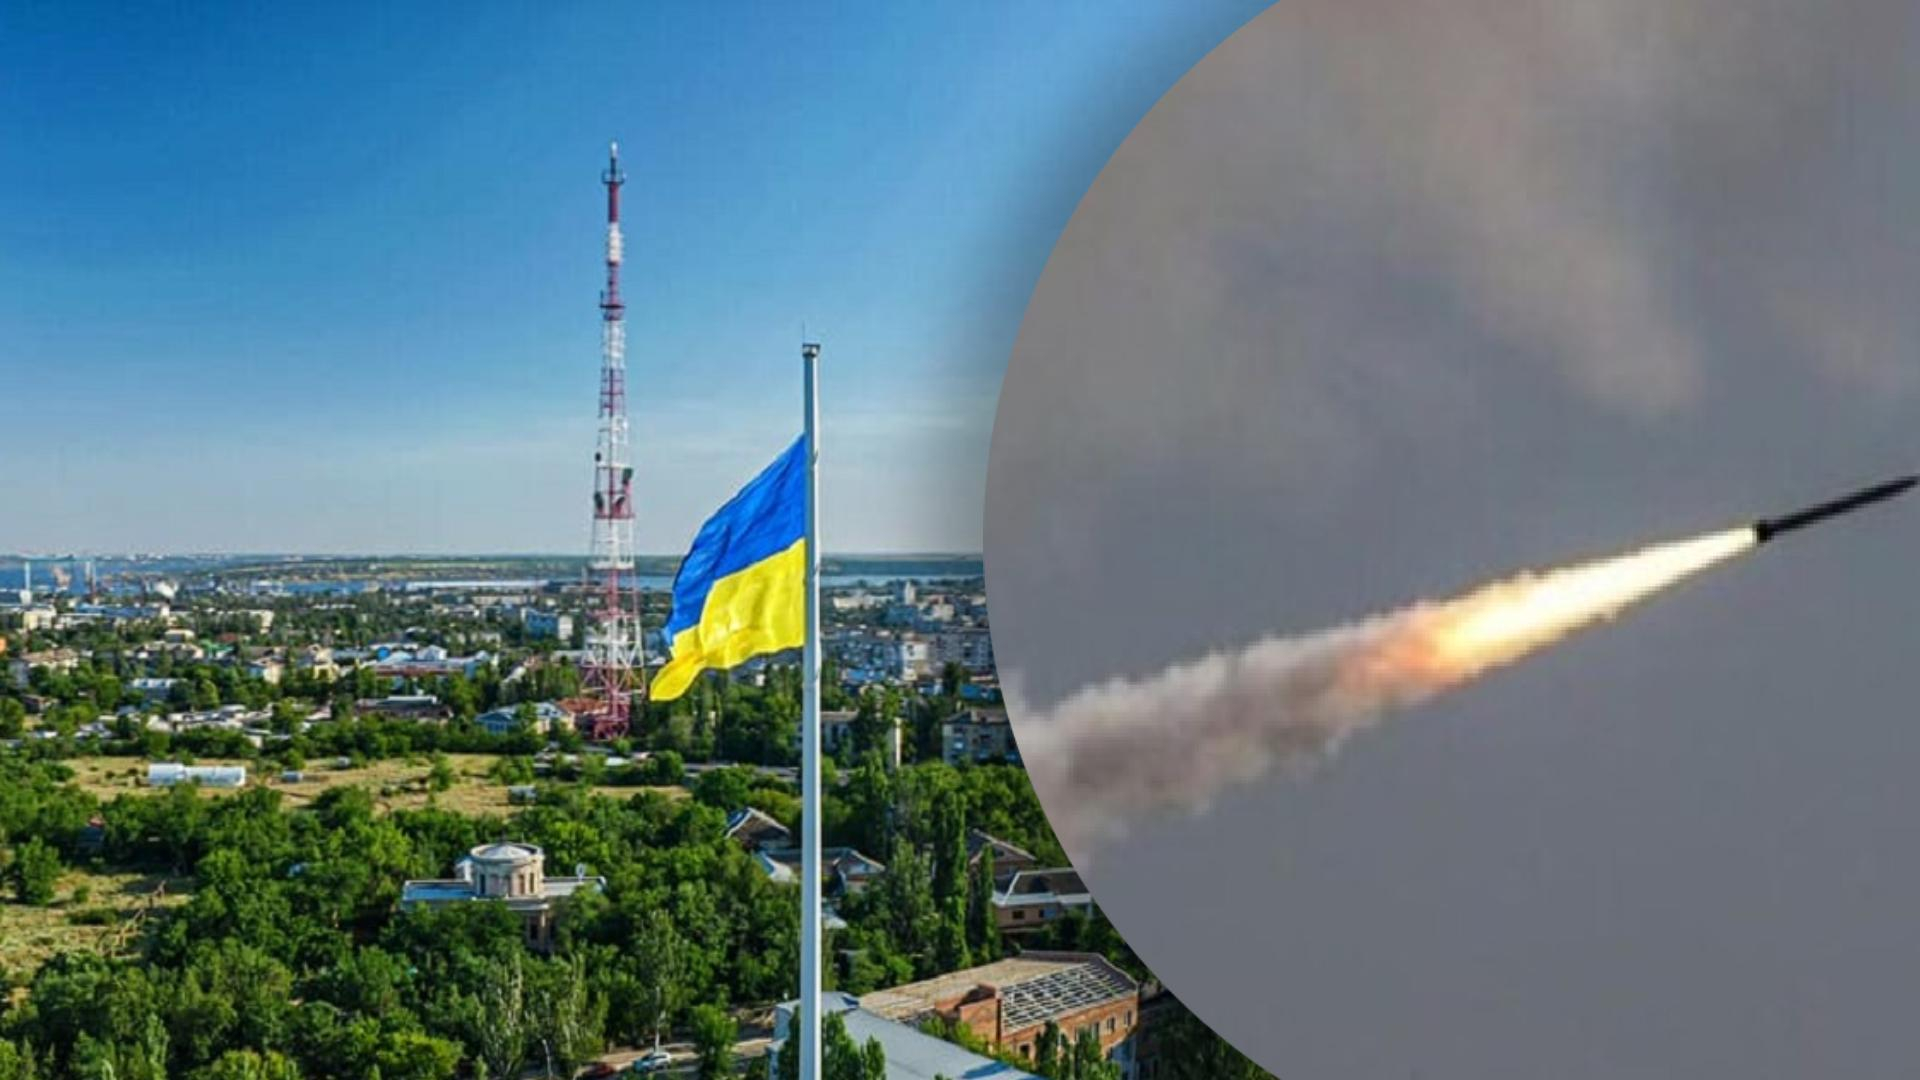 З 5 ракет збити вдалося 1: подробиці атаки росіян на Миколаїв 6 травня